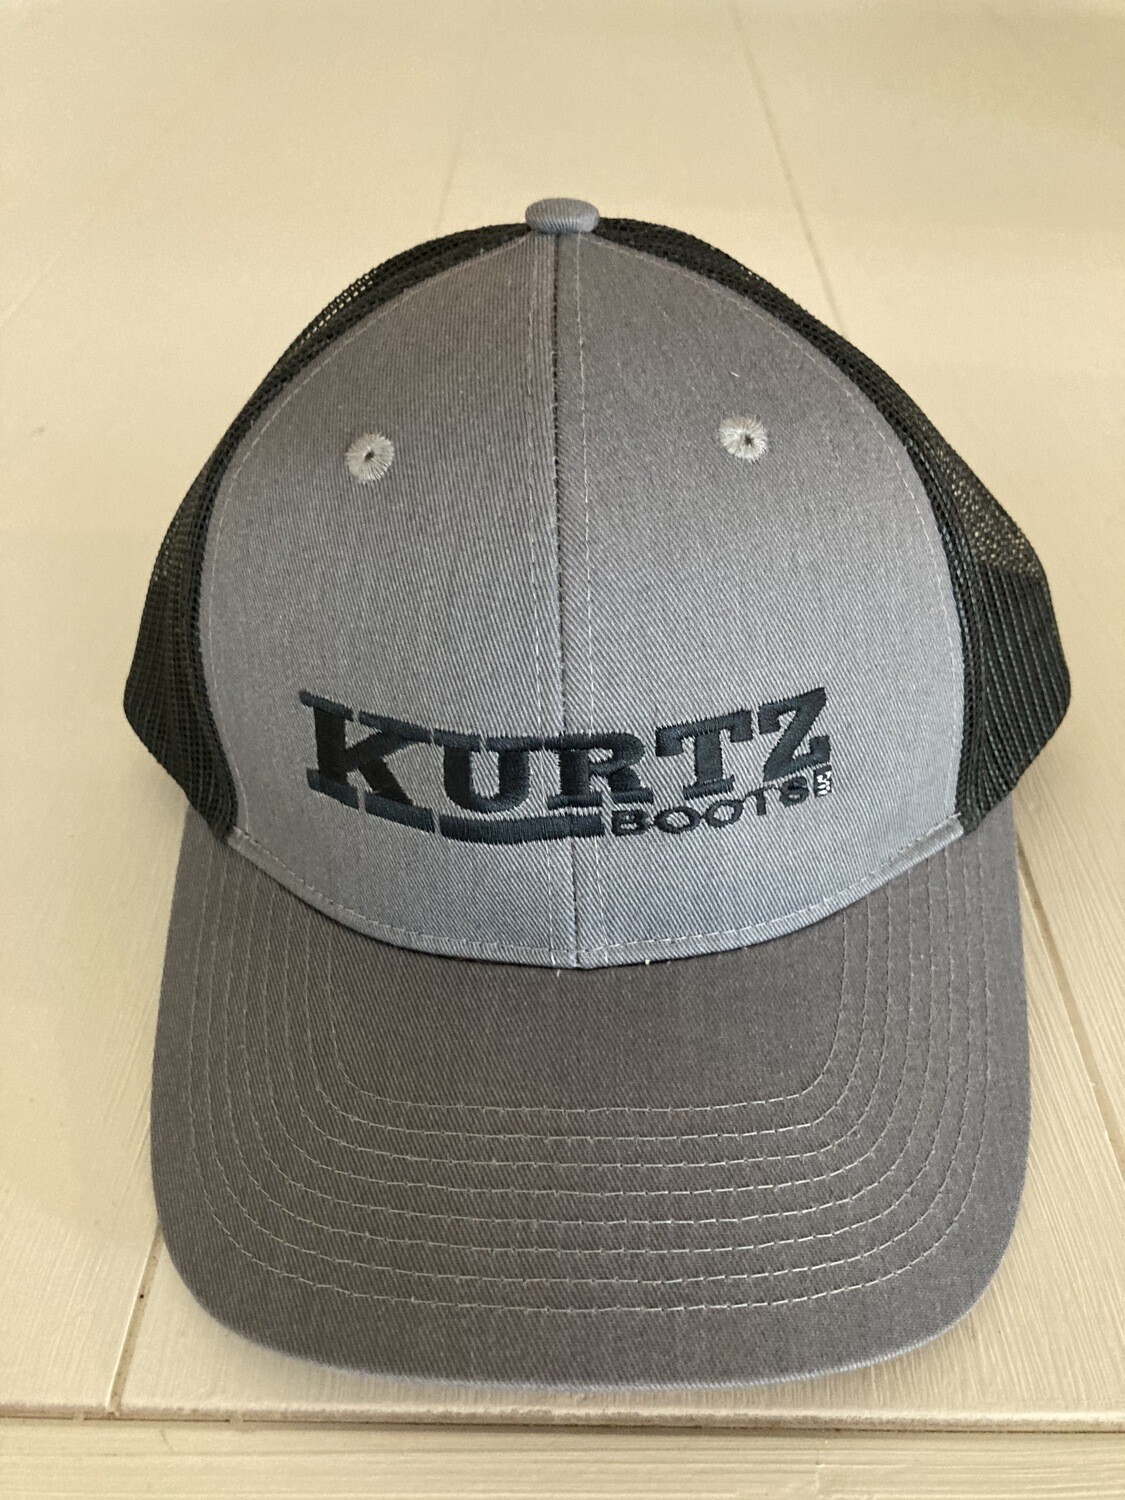 Kurtz Boots Hats